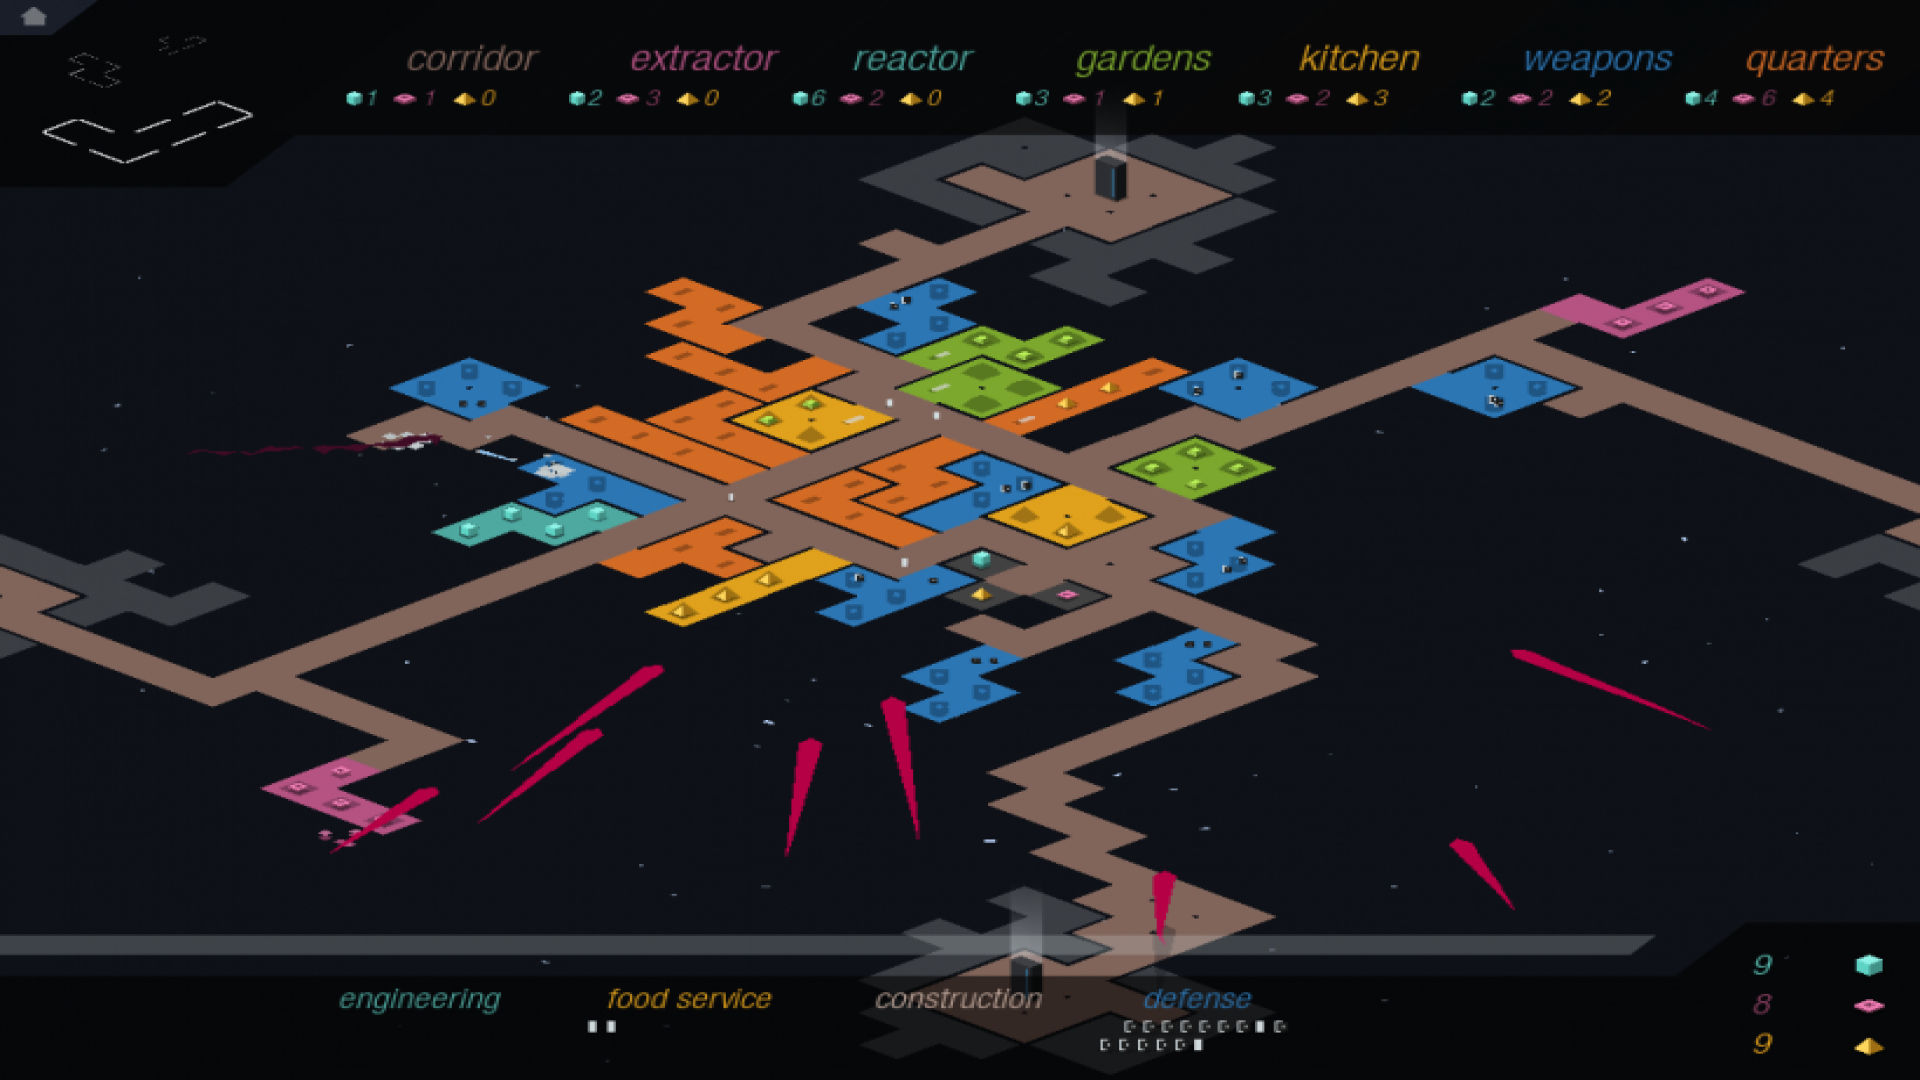 משחקי אסטרטגיה ניידים הטובים ביותר: Rymdkapsel. תמונה מציגה מפה קדחתנית ורב-צבעונית